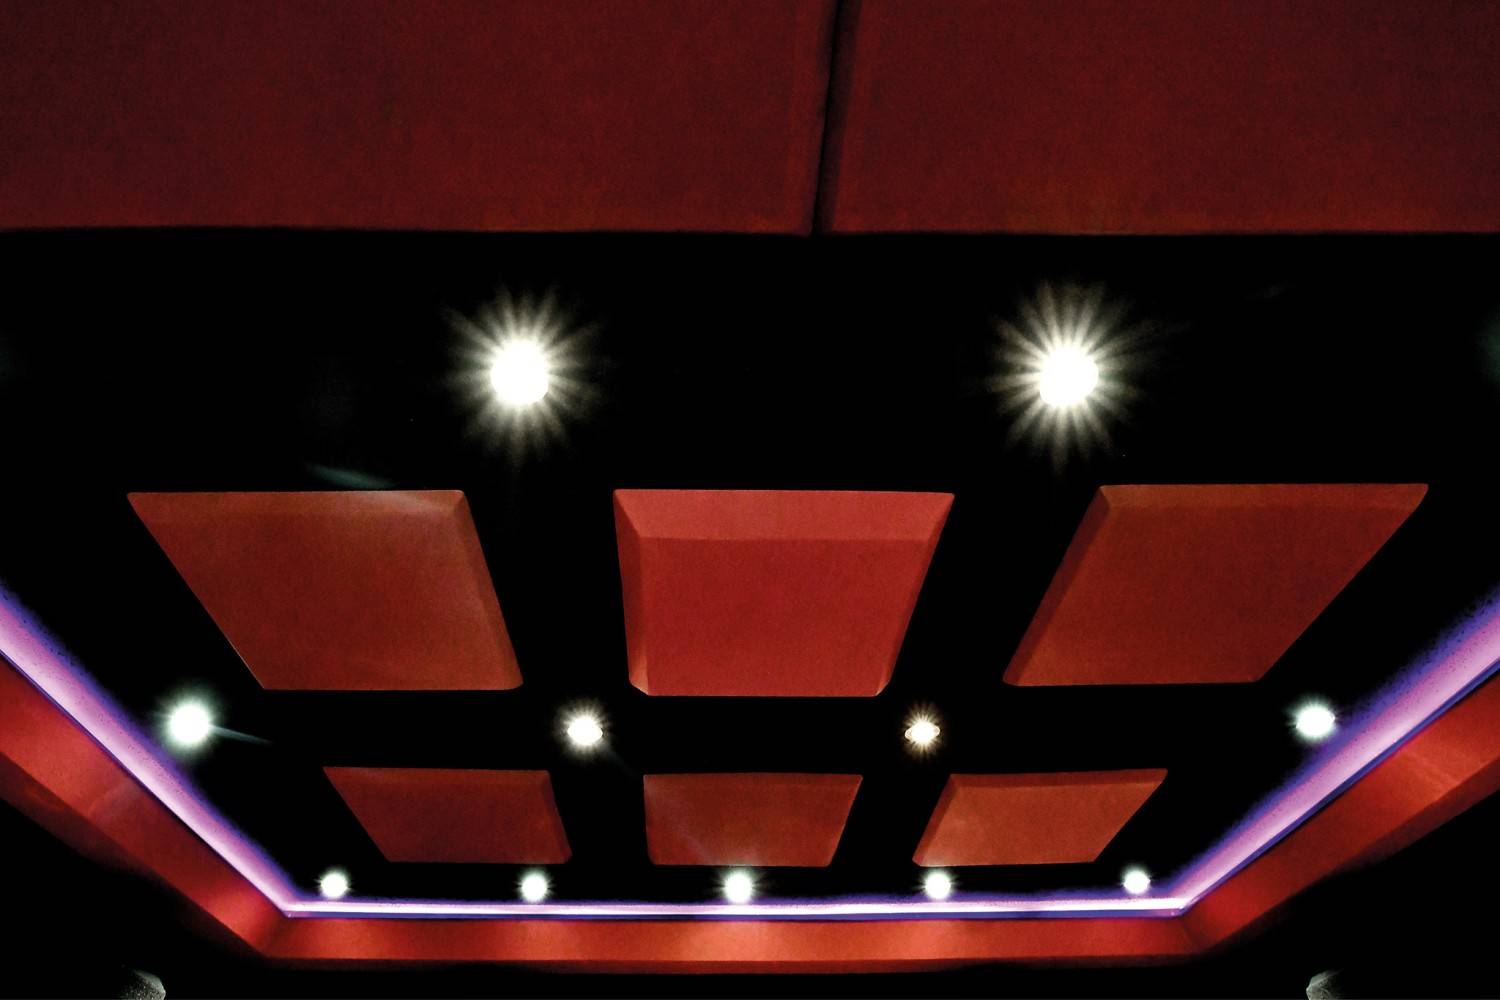 Ratgeber LESERKINO (13) Innovatives 7.1.5-Auro-3D-Kino: Lichtspielhaus mit Schiebewand - News, Bild 7